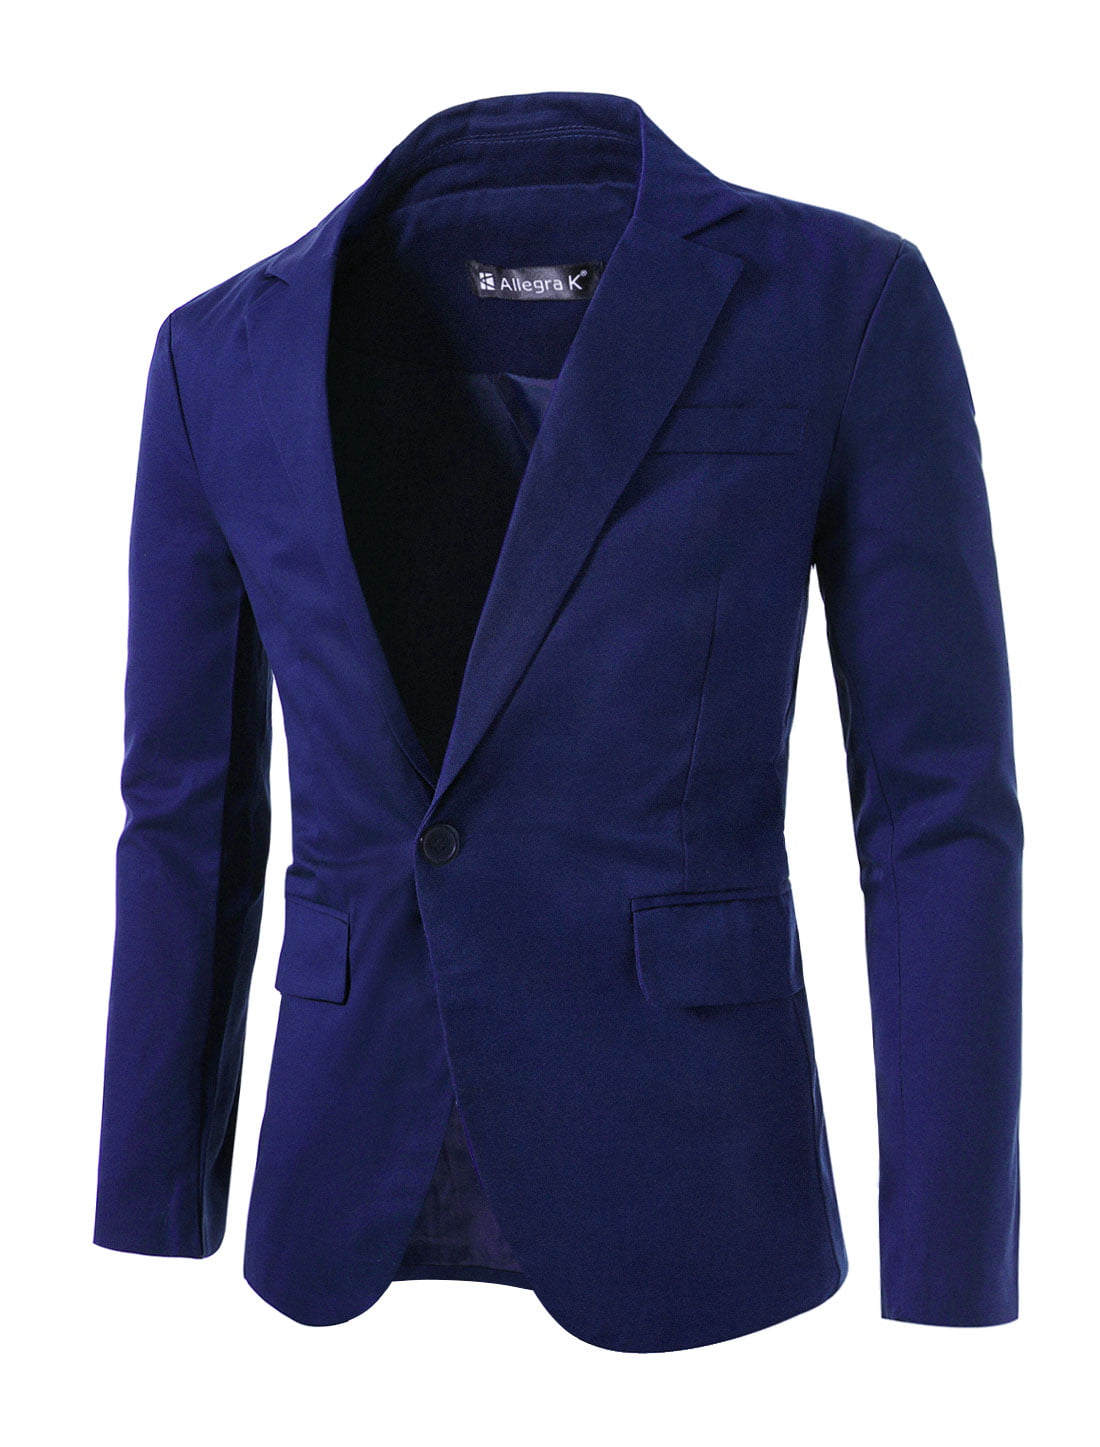 Unique Bargains - Men's One Button Slim Fit Casual Sport Coats Blazer L ...